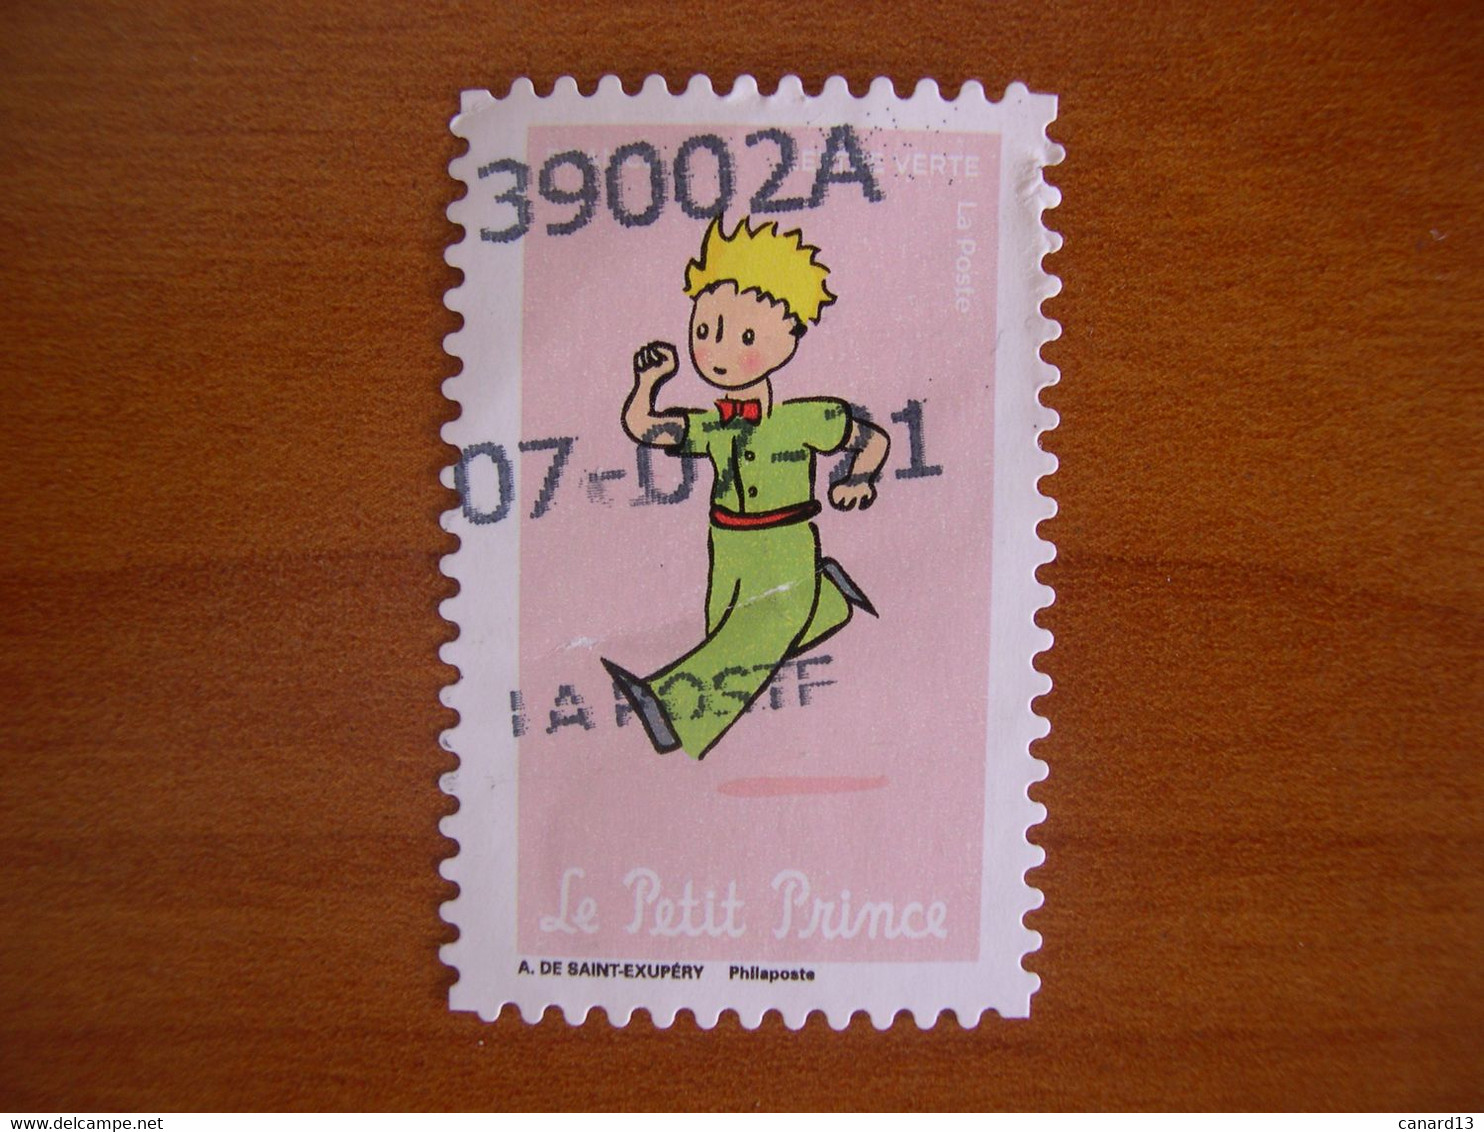 France  Obl   N° 2005 Oblitération Date - Used Stamps